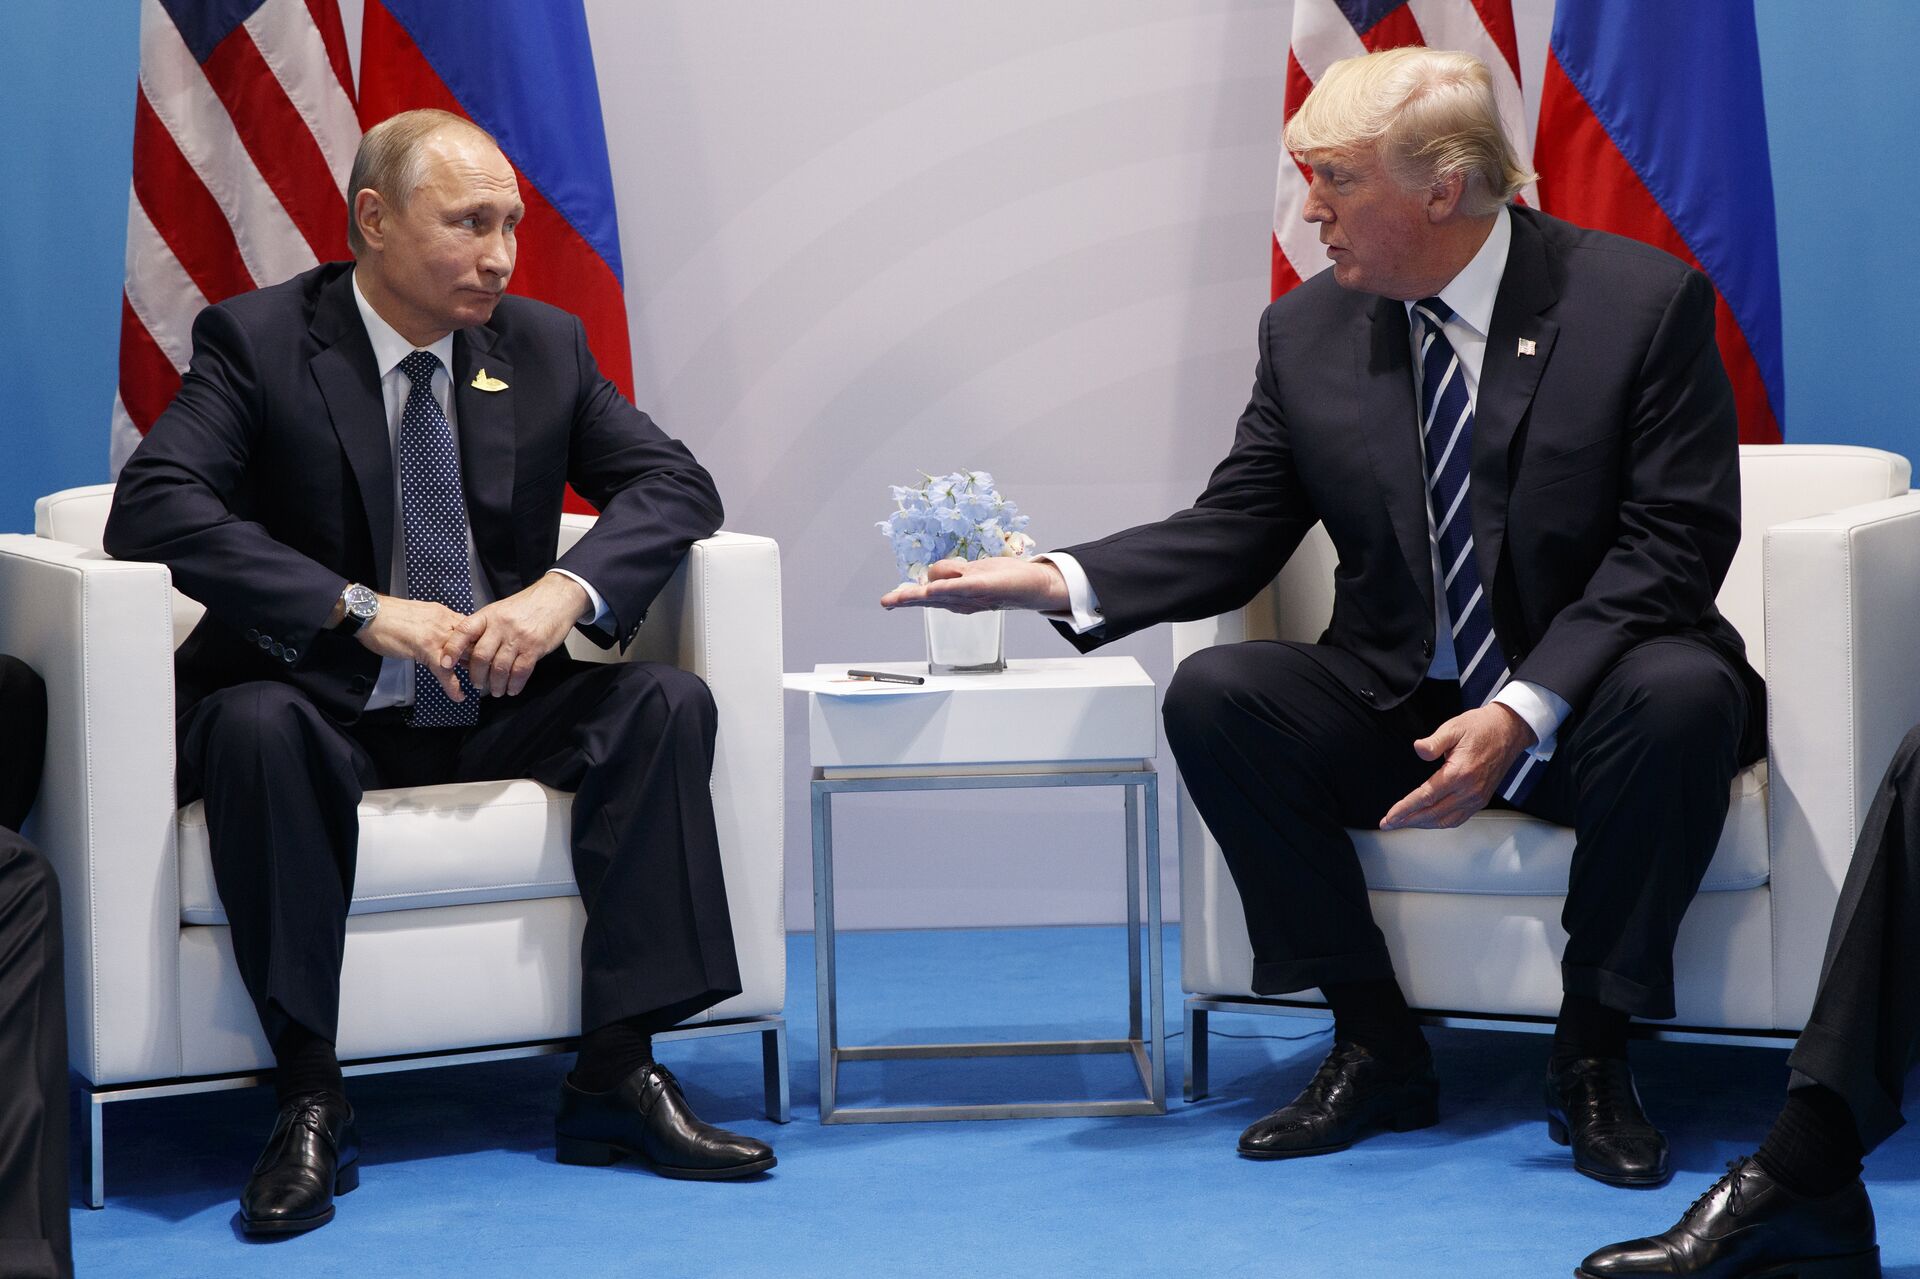 El presidente ruso, Vladímir Putin, y el expresidente de EEUU Donald Trump en la cumbre de G20, el 7 de julio de 2017 (archivo) - Sputnik Mundo, 1920, 15.06.2021